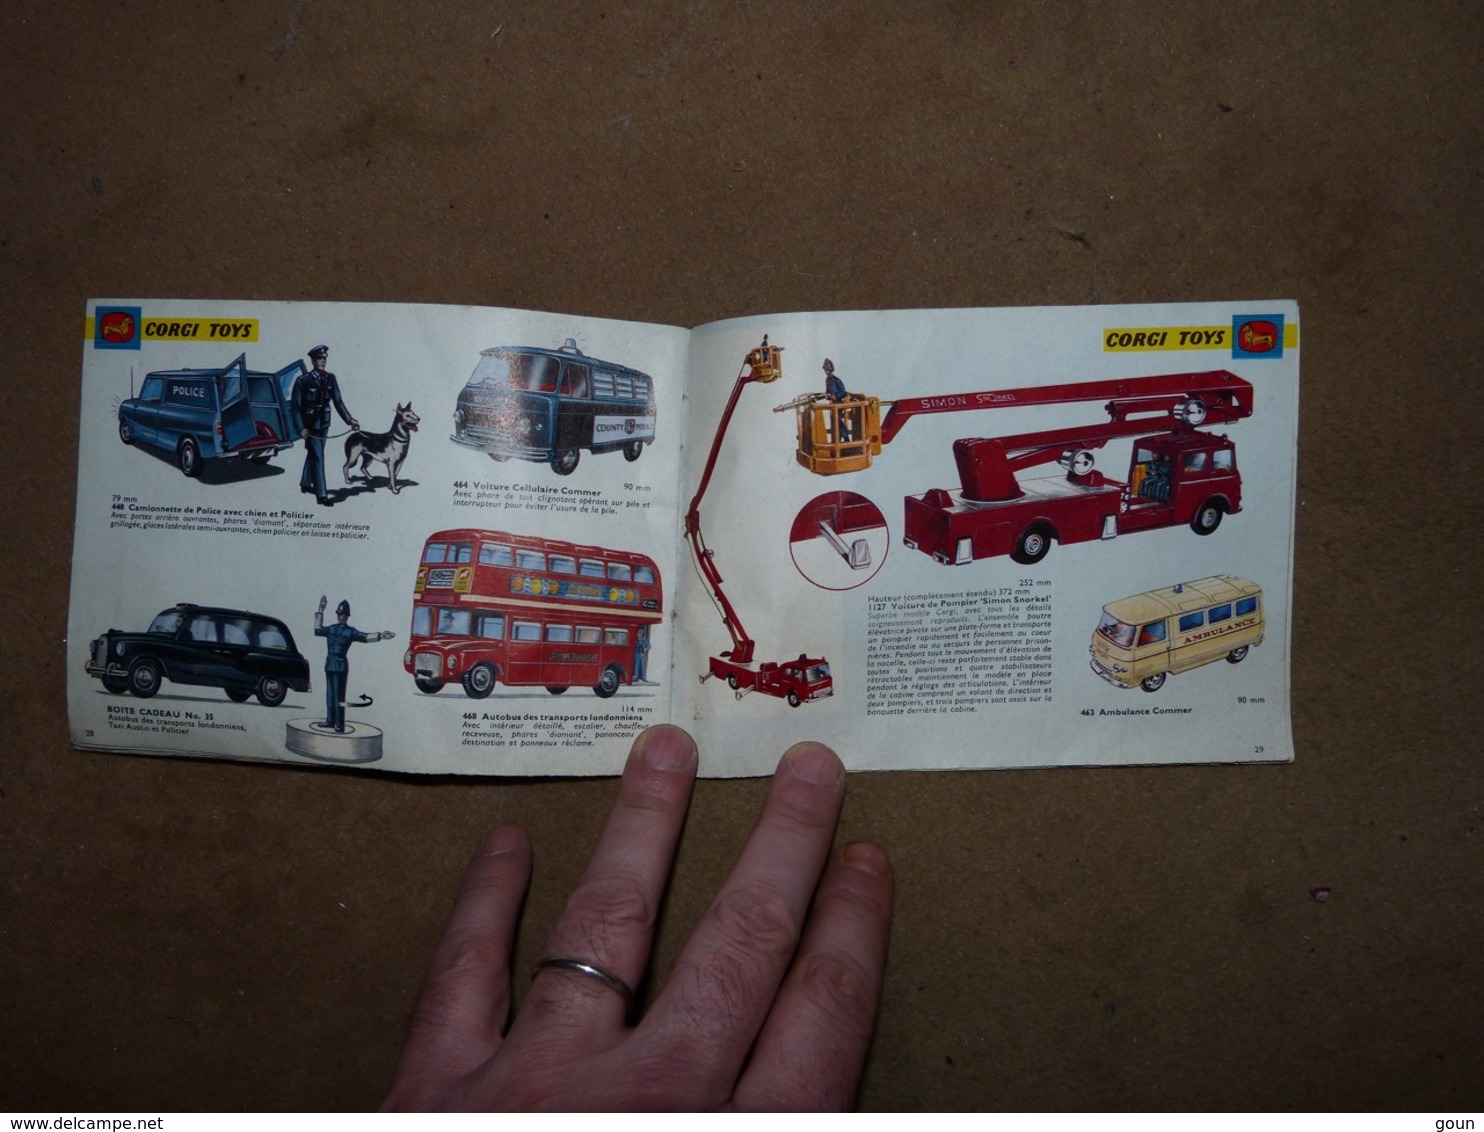 Petit catalogue avec tarif Corgi Toys 1965 James Bond 007 cirque Van VW pompier tracteur etc etc